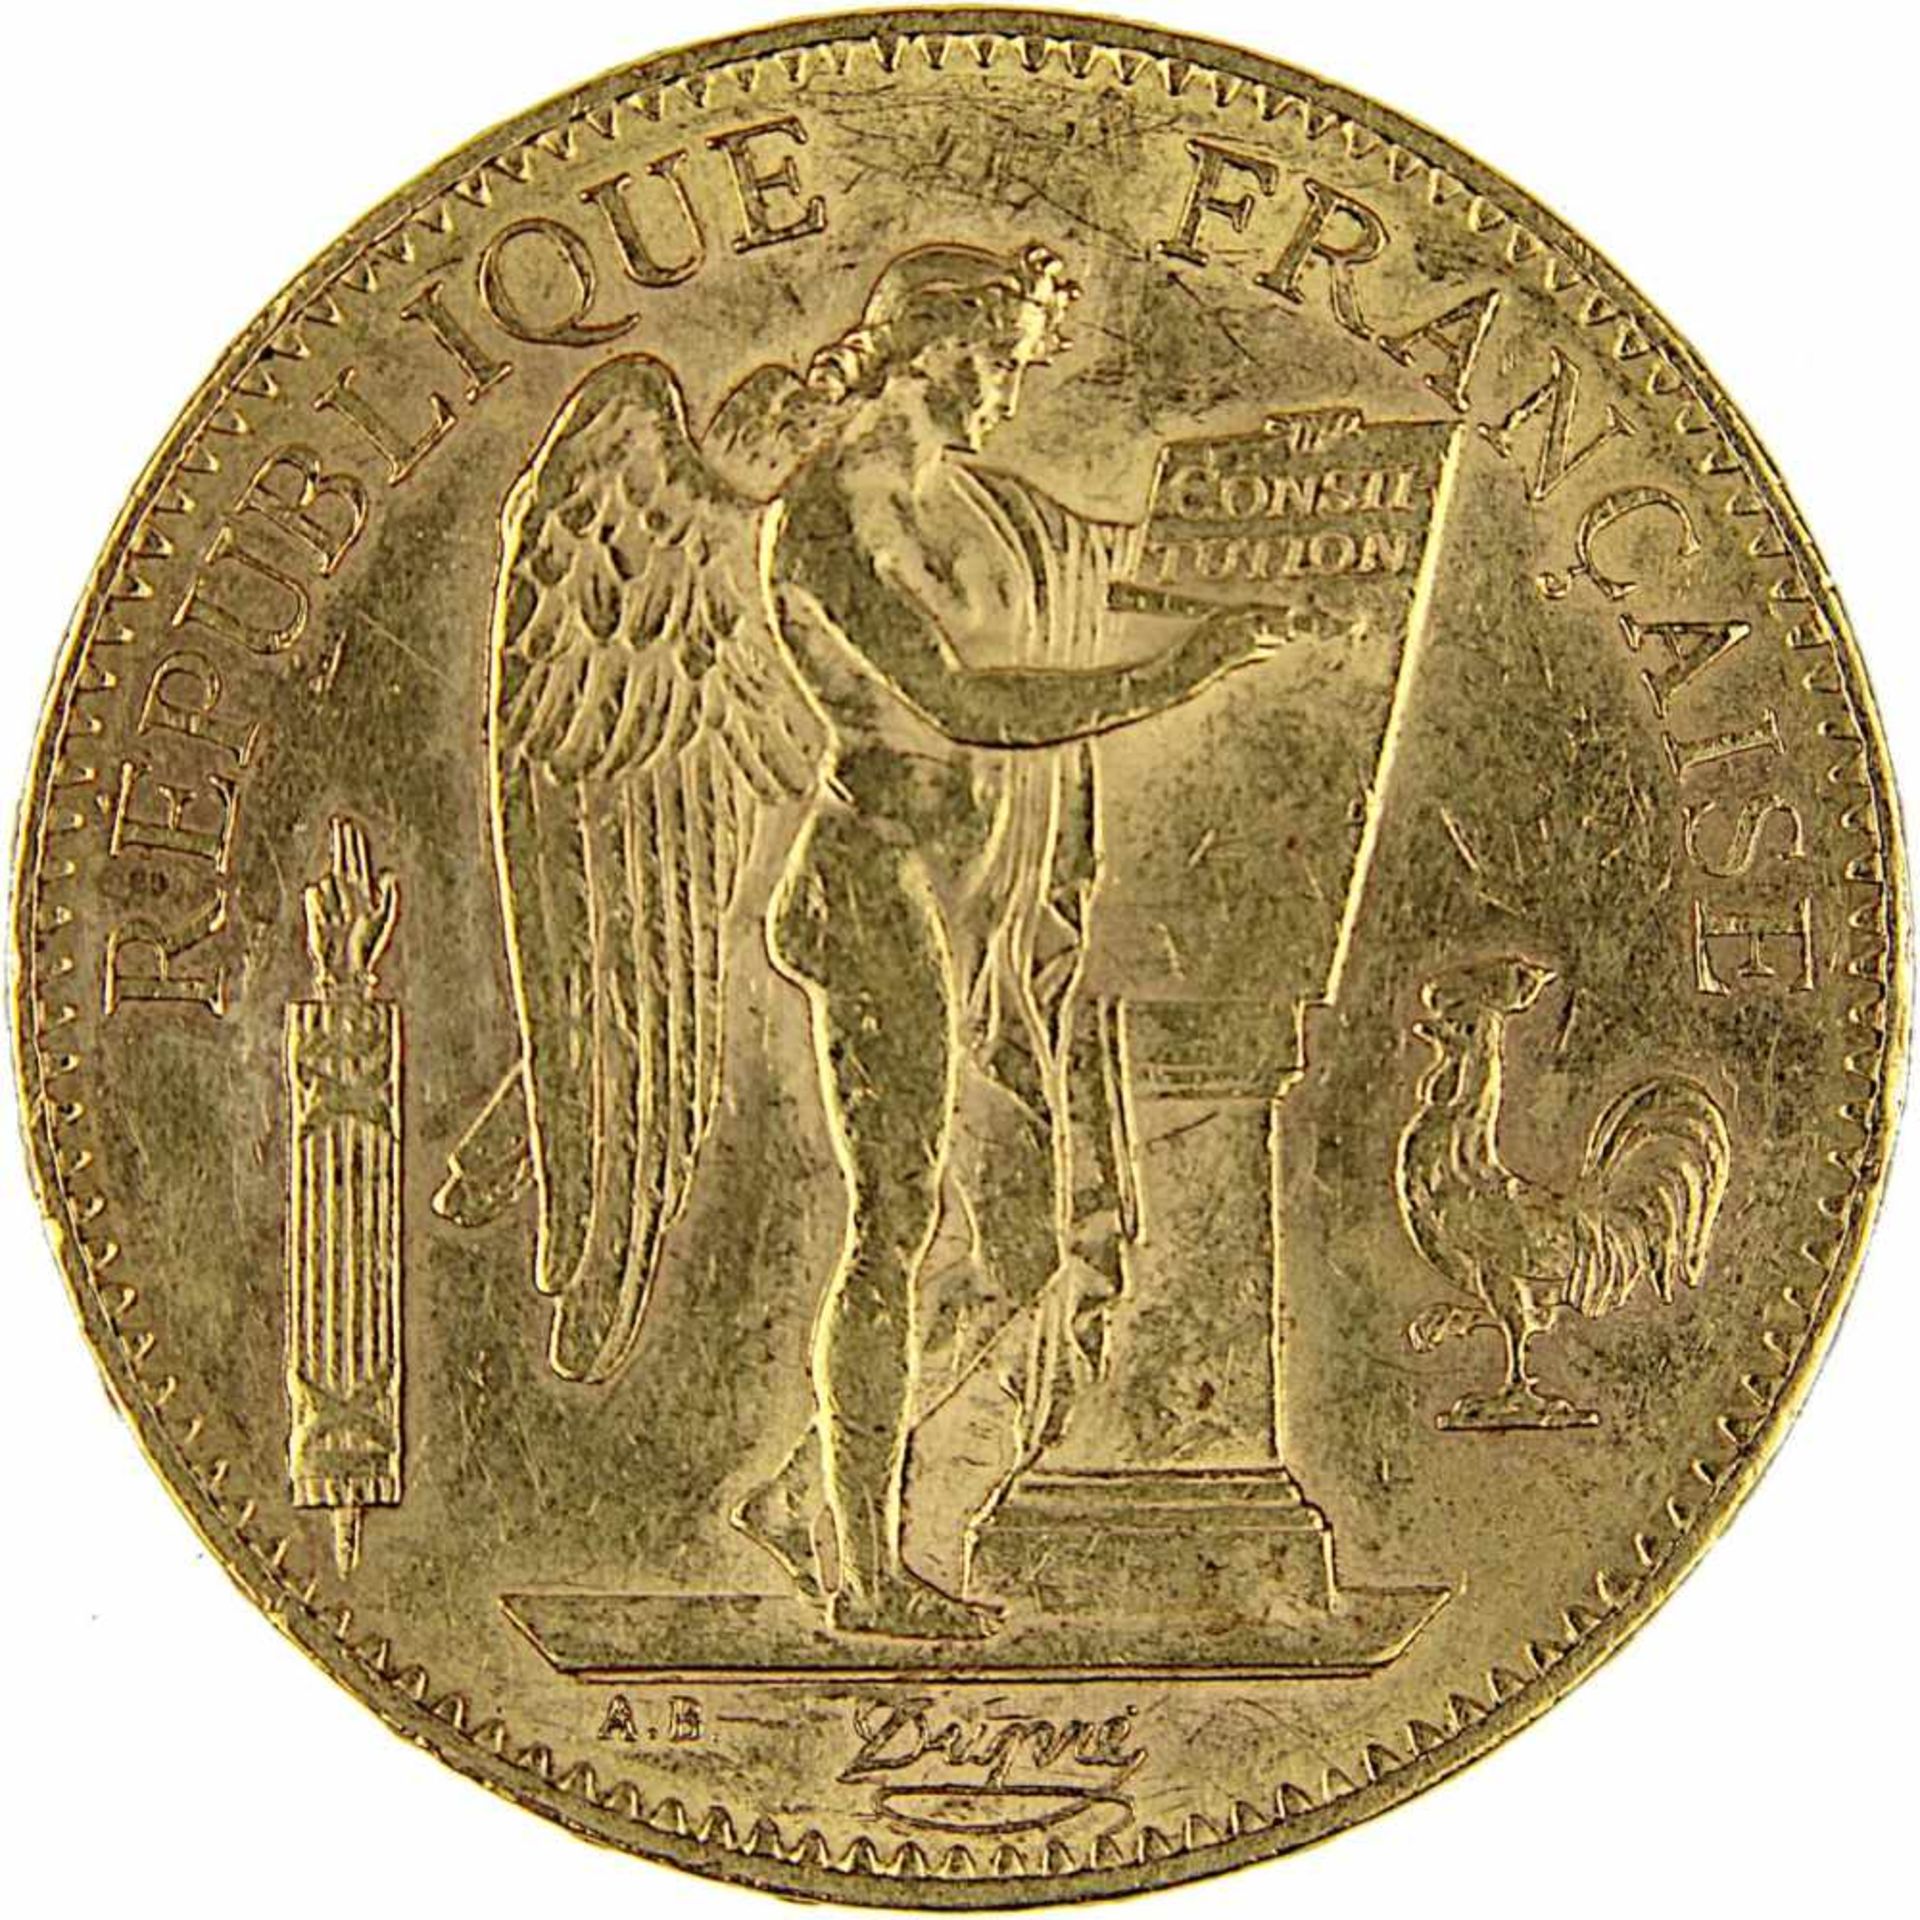 Goldmünze zu 100 Francs, Frankreich 1906, A für Paris, 900er Gold, 32,2 g, Erhaltung sehr schön, - Bild 2 aus 3